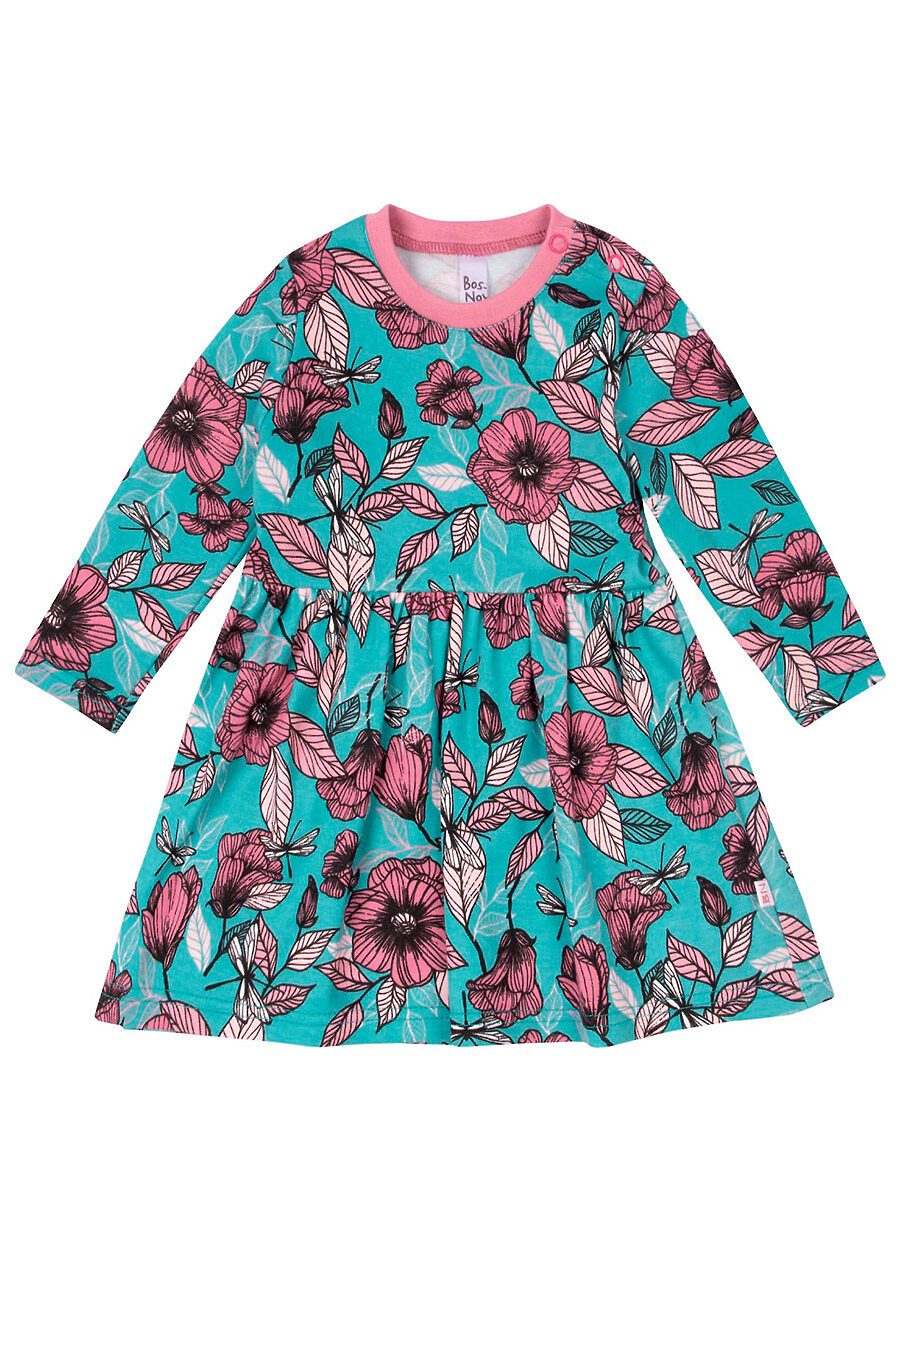 Платье для девочек BOSSA NOVA 708781 купить оптом от производителя. Совместная покупка детской одежды в OptMoyo